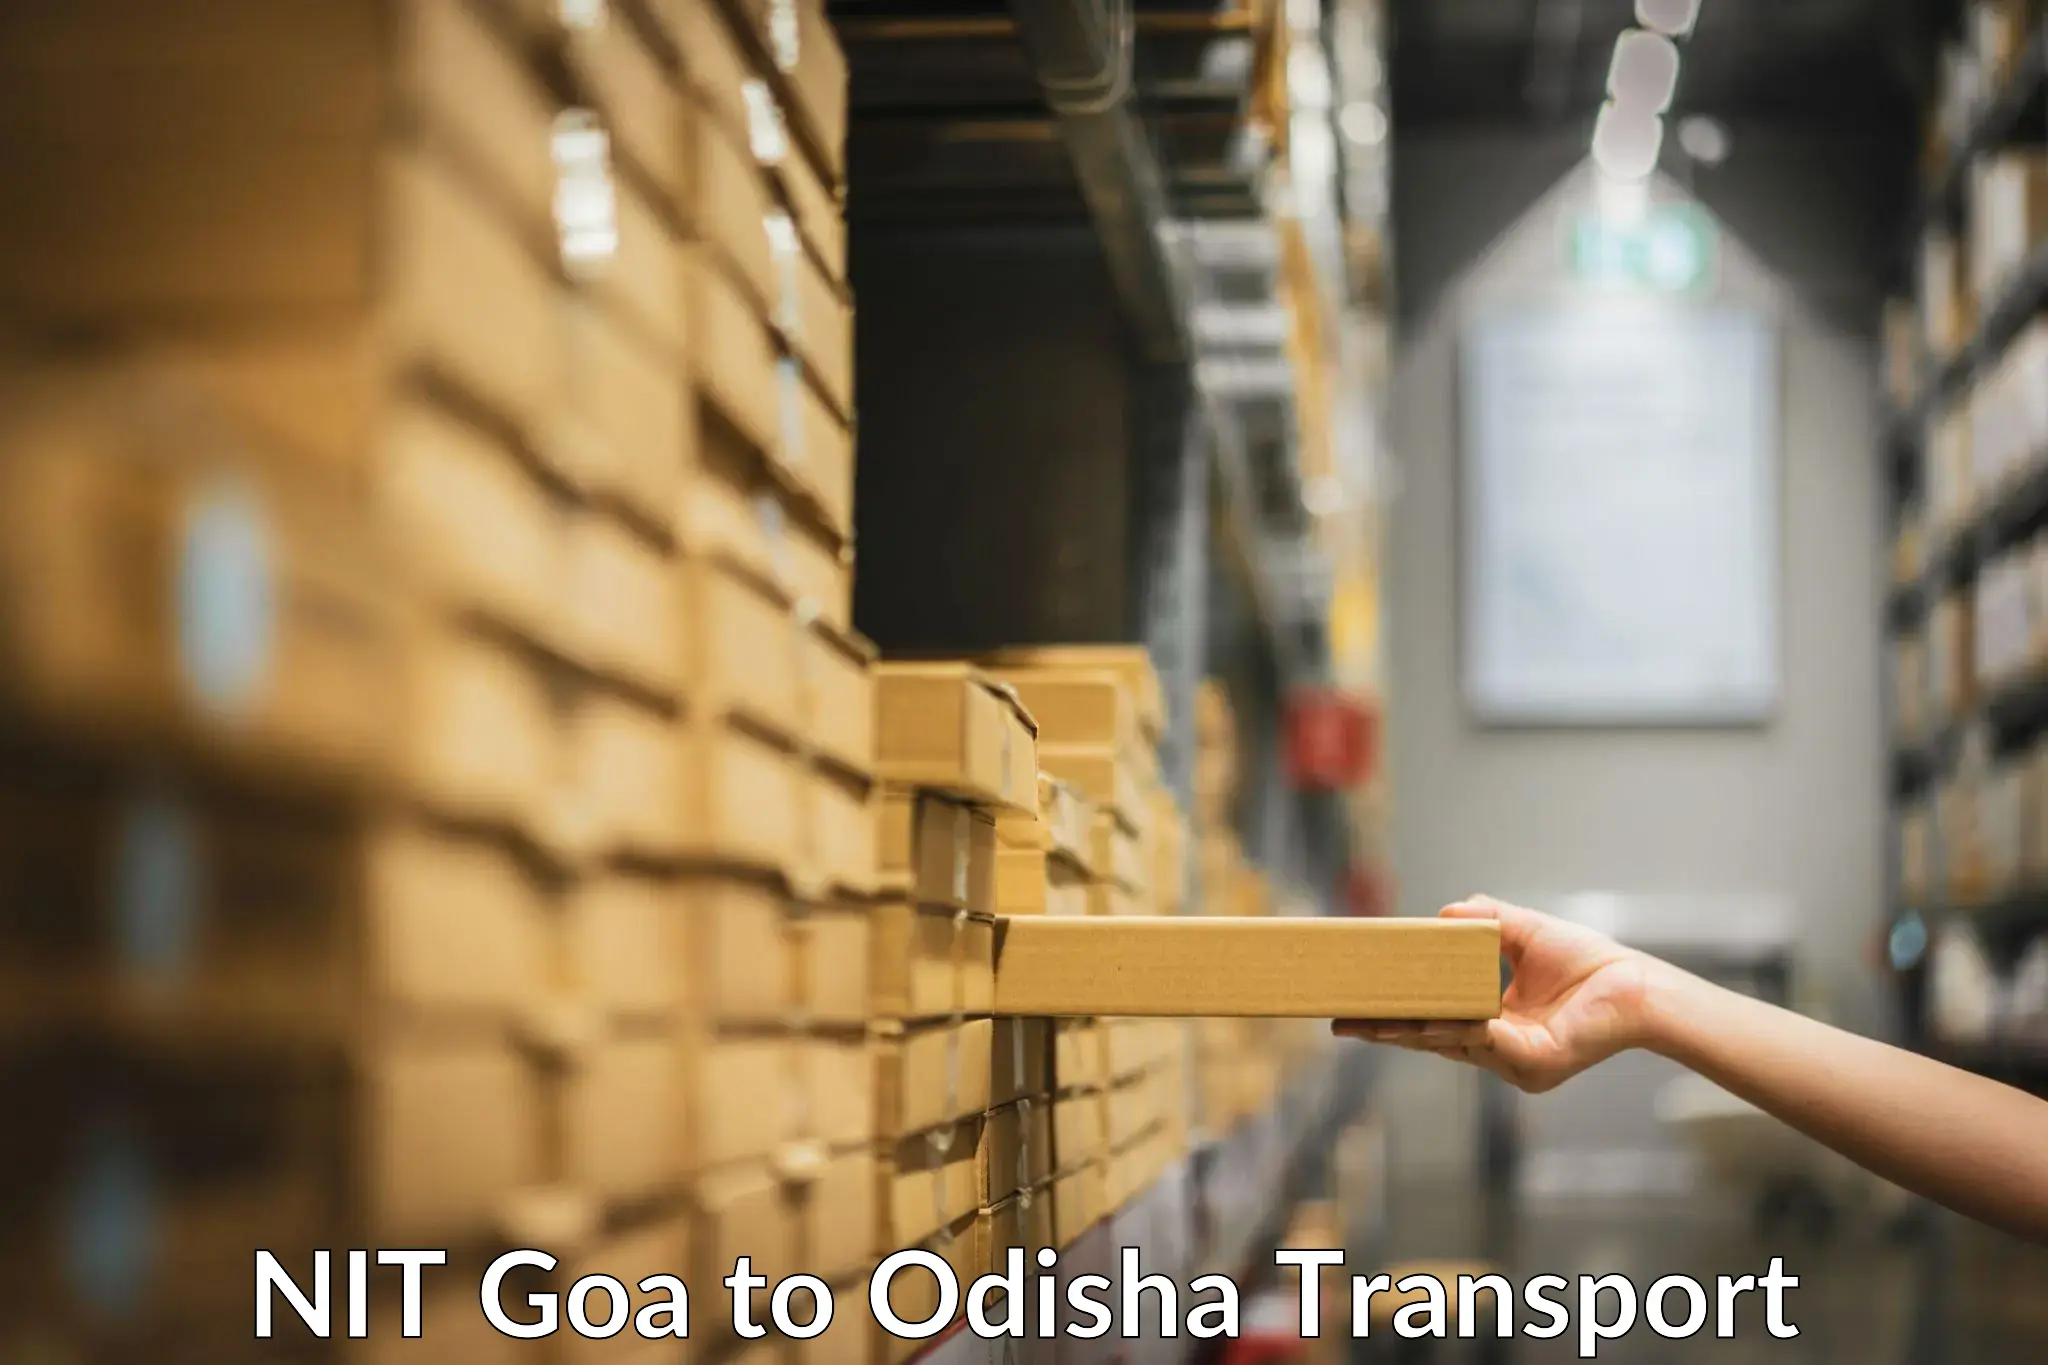 International cargo transportation services NIT Goa to Mathili